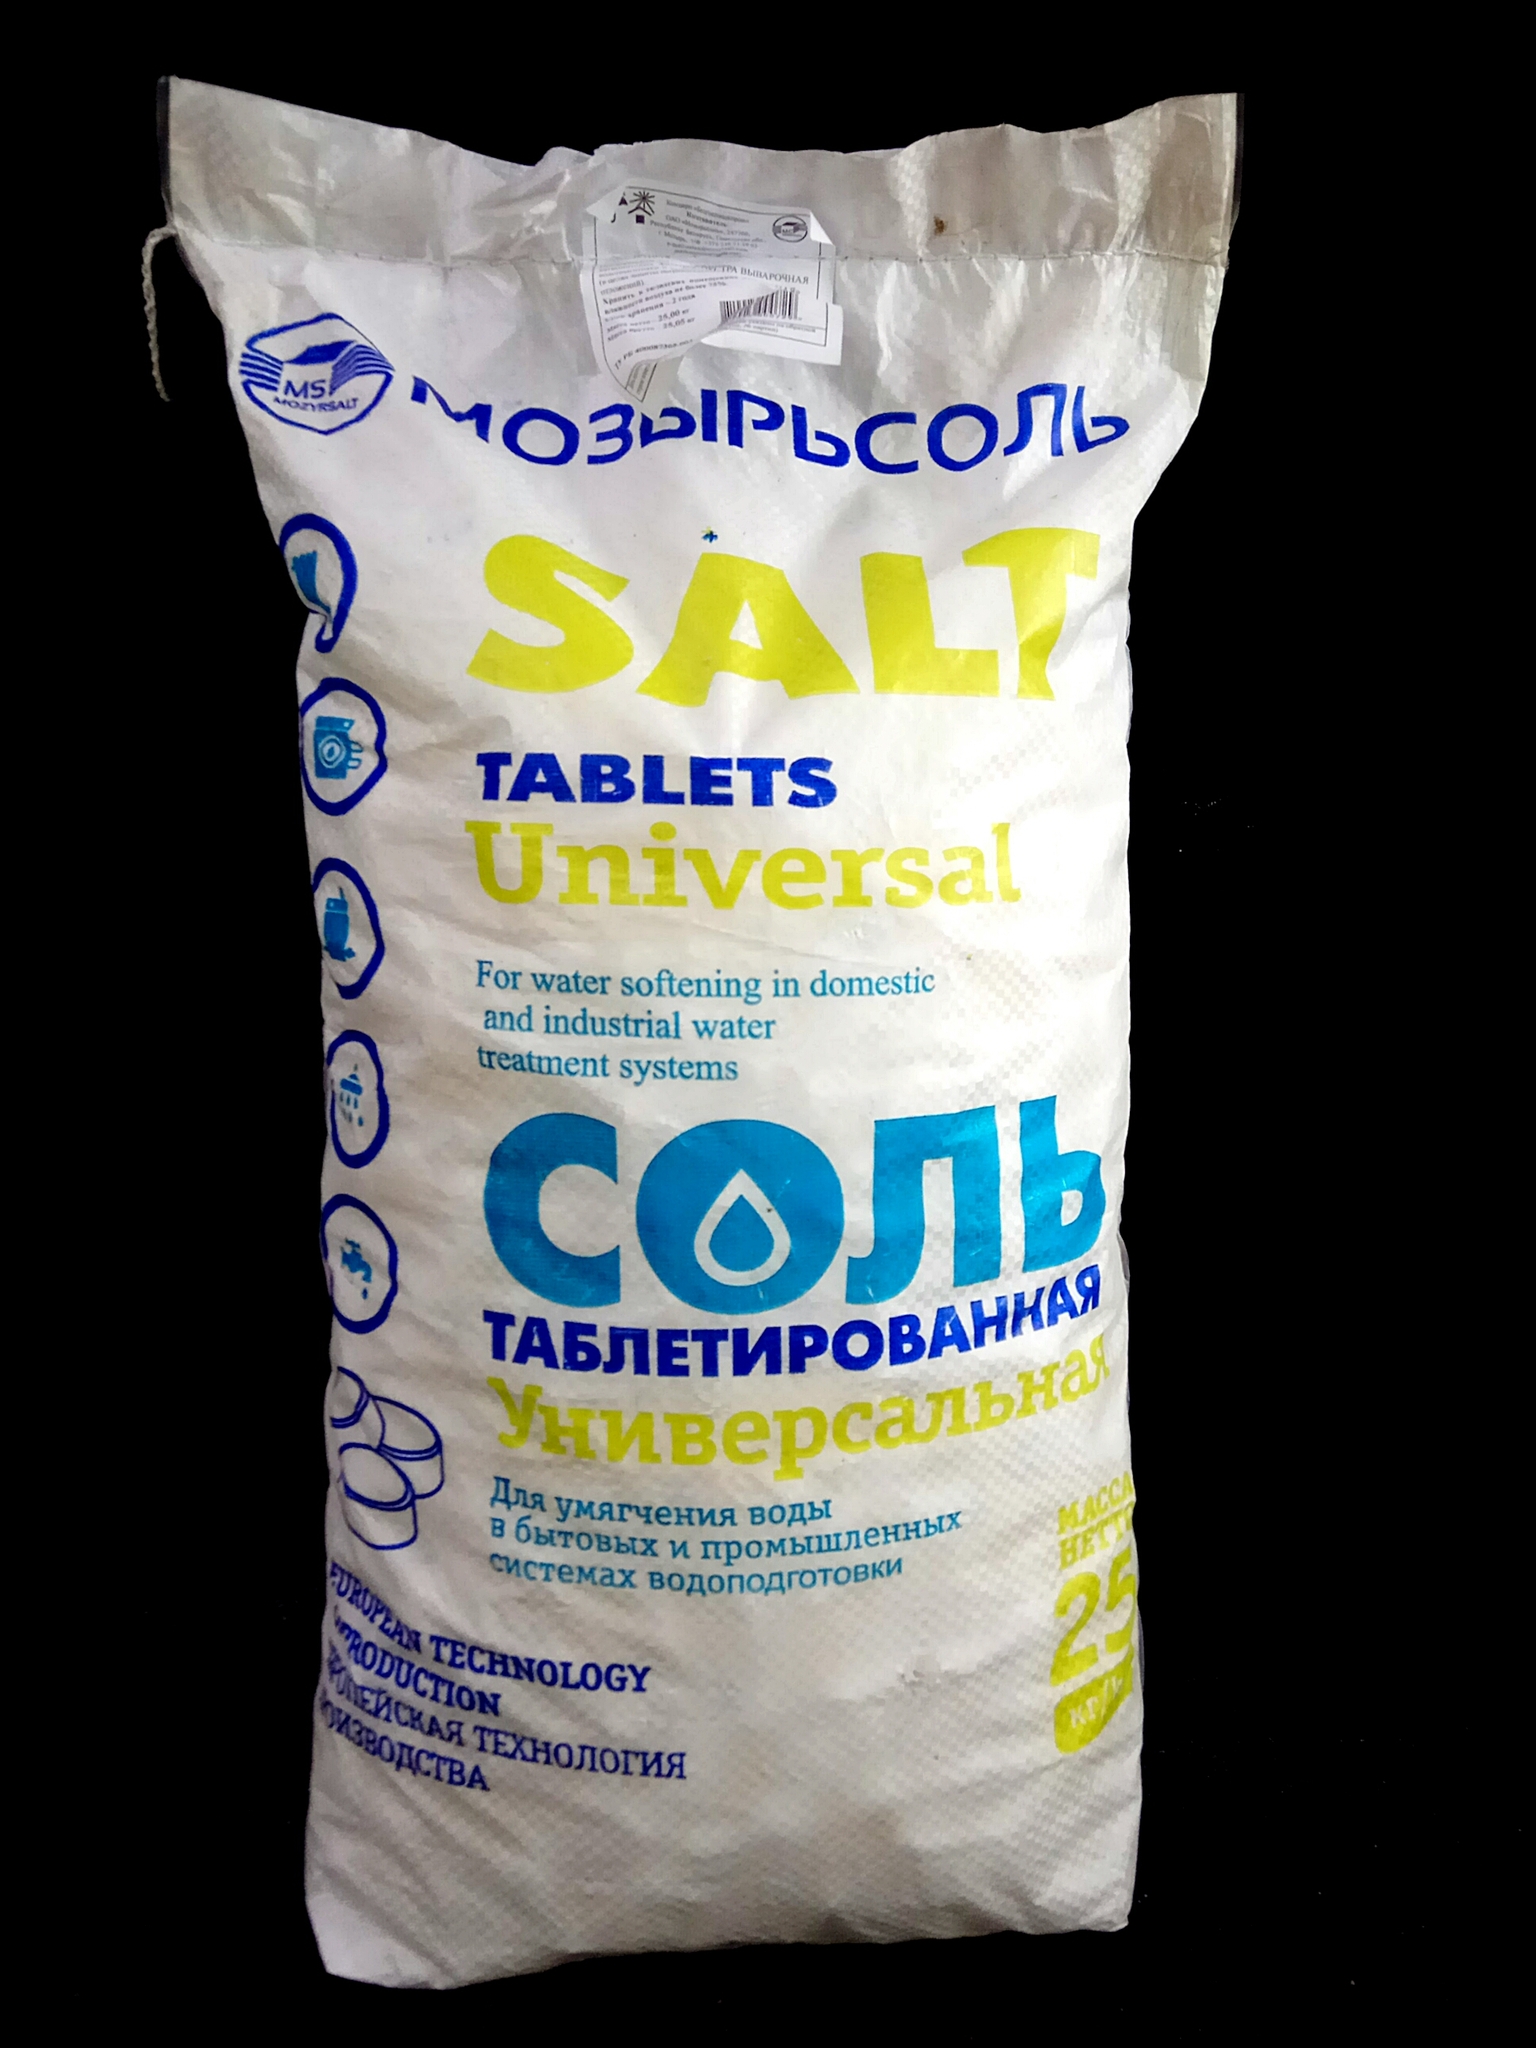 Купить соль мозырь 25 кг. Соль таблетированная Мозырьсоль 25. Мешок Мозырьсоль 25 кг. Мозырь соль таблетированная 25 кг. Таблетированная соль Экстра соль 25 кг.